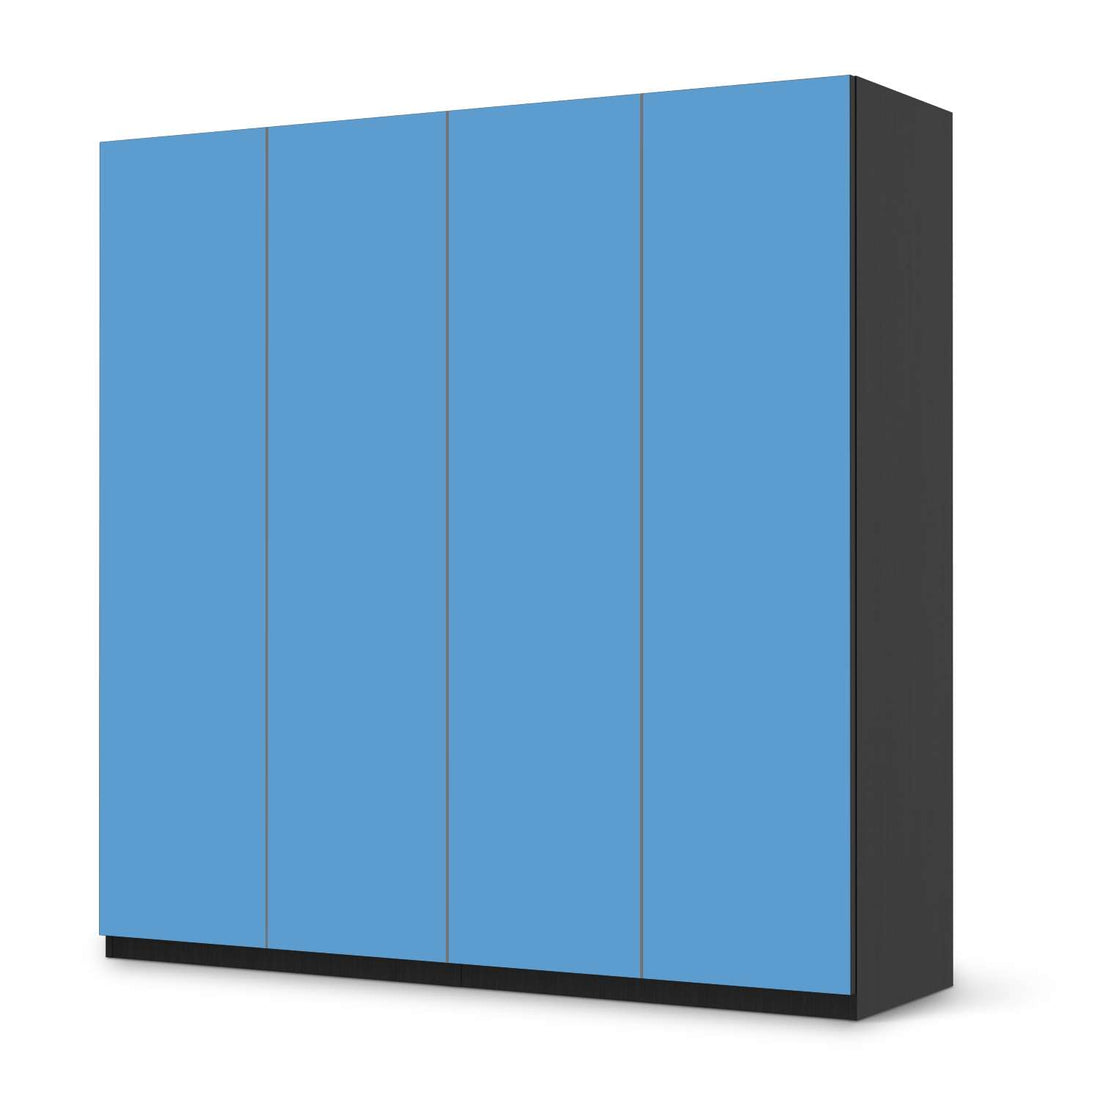 Klebefolie für Schränke Blau Light - IKEA Pax Schrank 201 cm Höhe - 4 Türen - schwarz